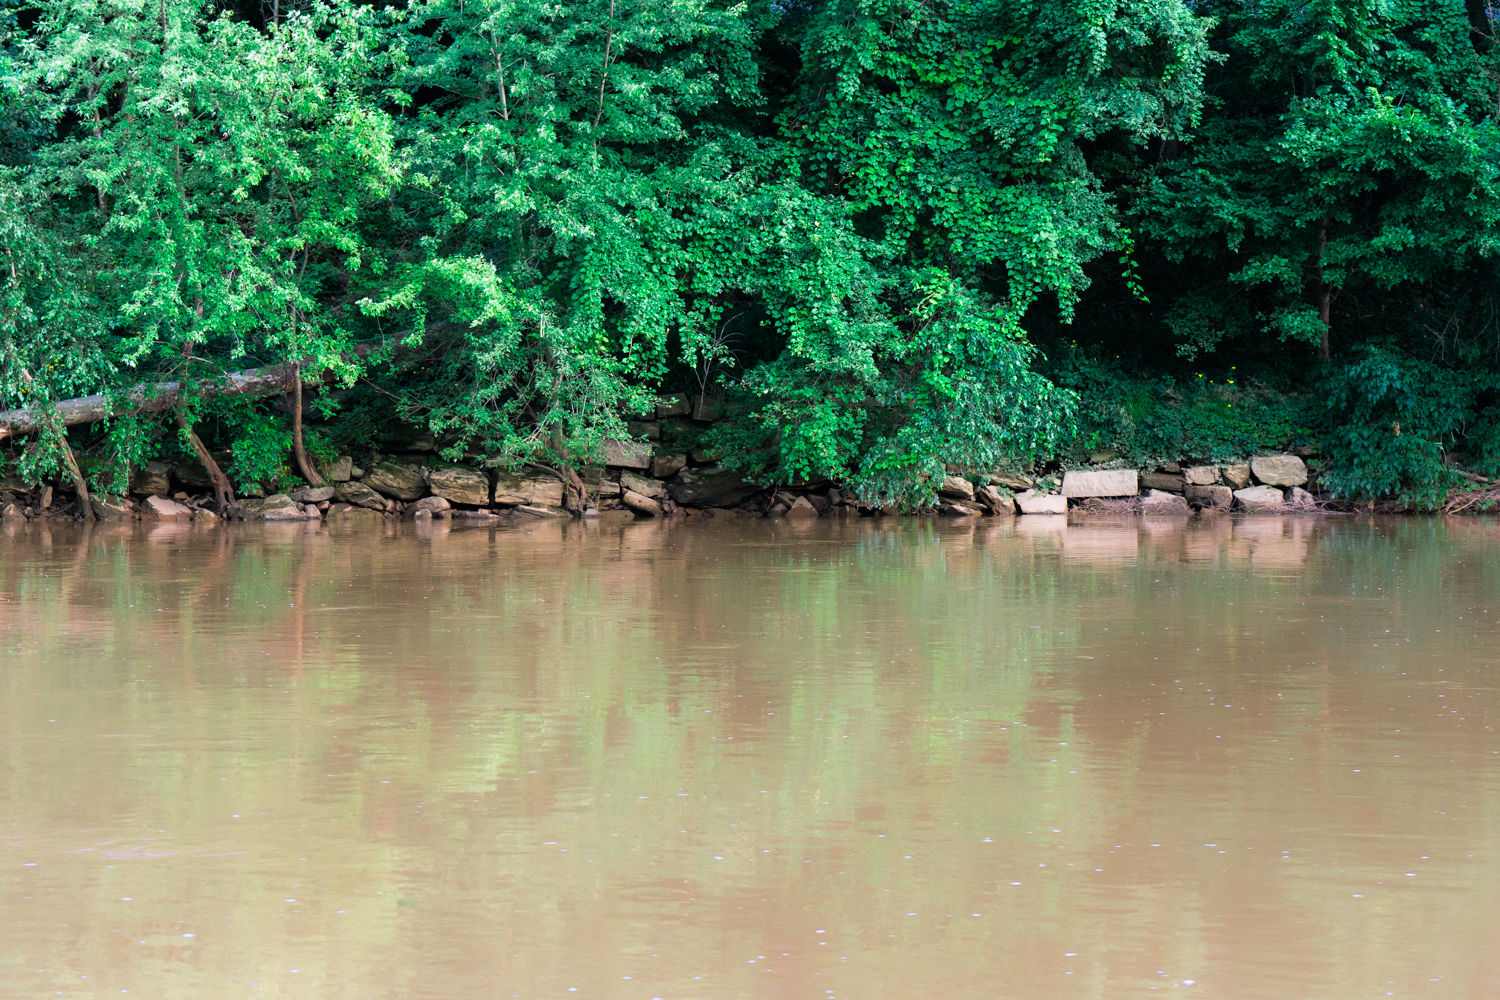 Juniata River in rural Pennsylvania - travel nature photography